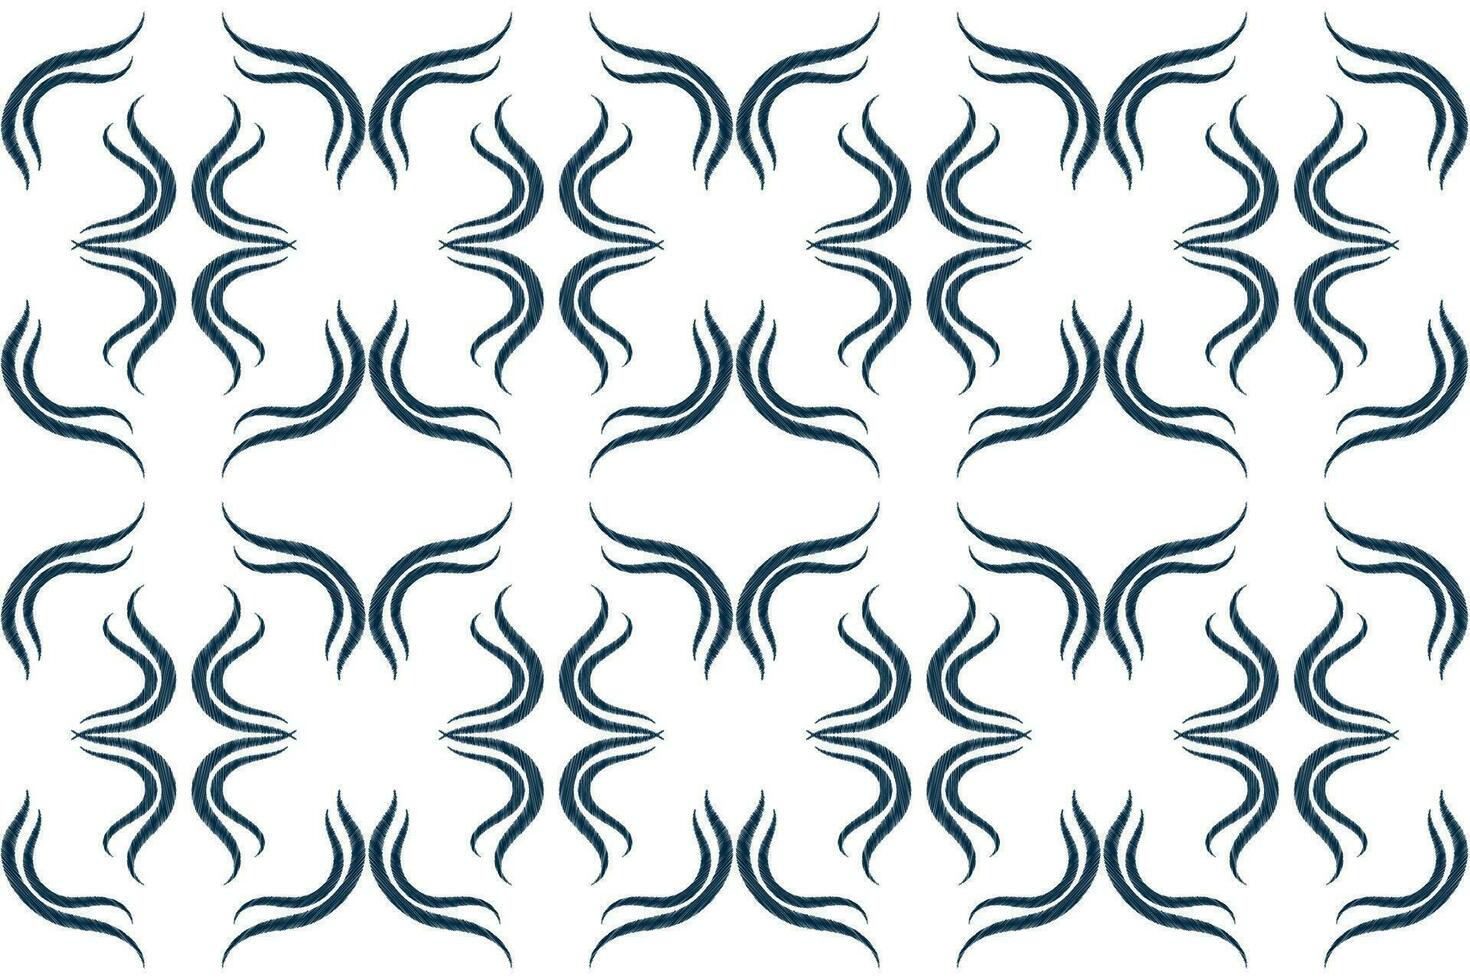 etnico ikat tessuto modello geometrico stile.africano ikat ricamo etnico orientale modello blu bianca sfondo. astratto,vettore,illustrazione.trama,abbigliamento,cornice,decorazione,tappeto,motivo. vettore